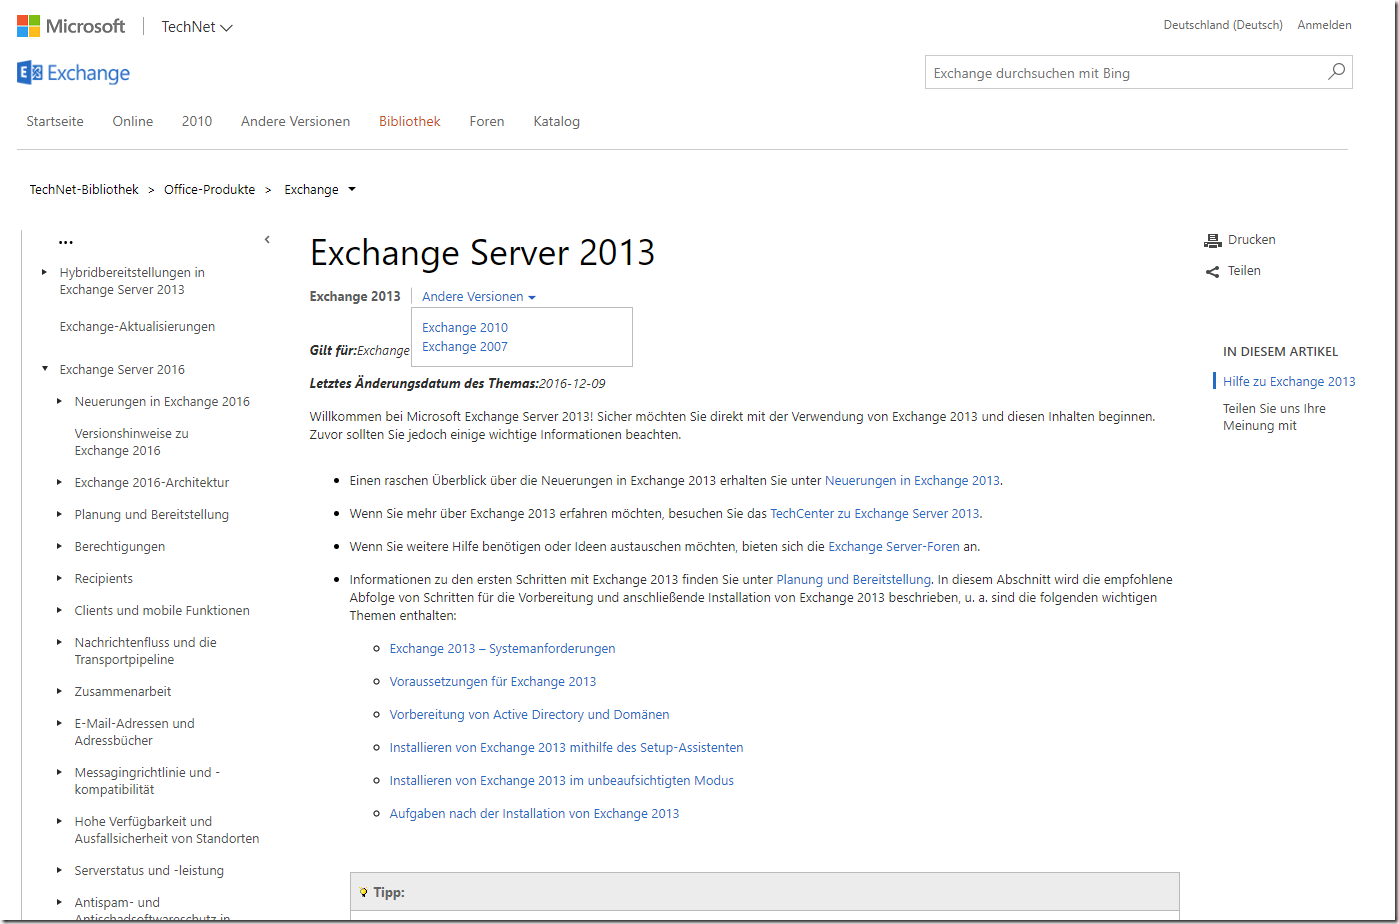 Exchange Server 2016: Dokumentation unter neuer URL verfügbar